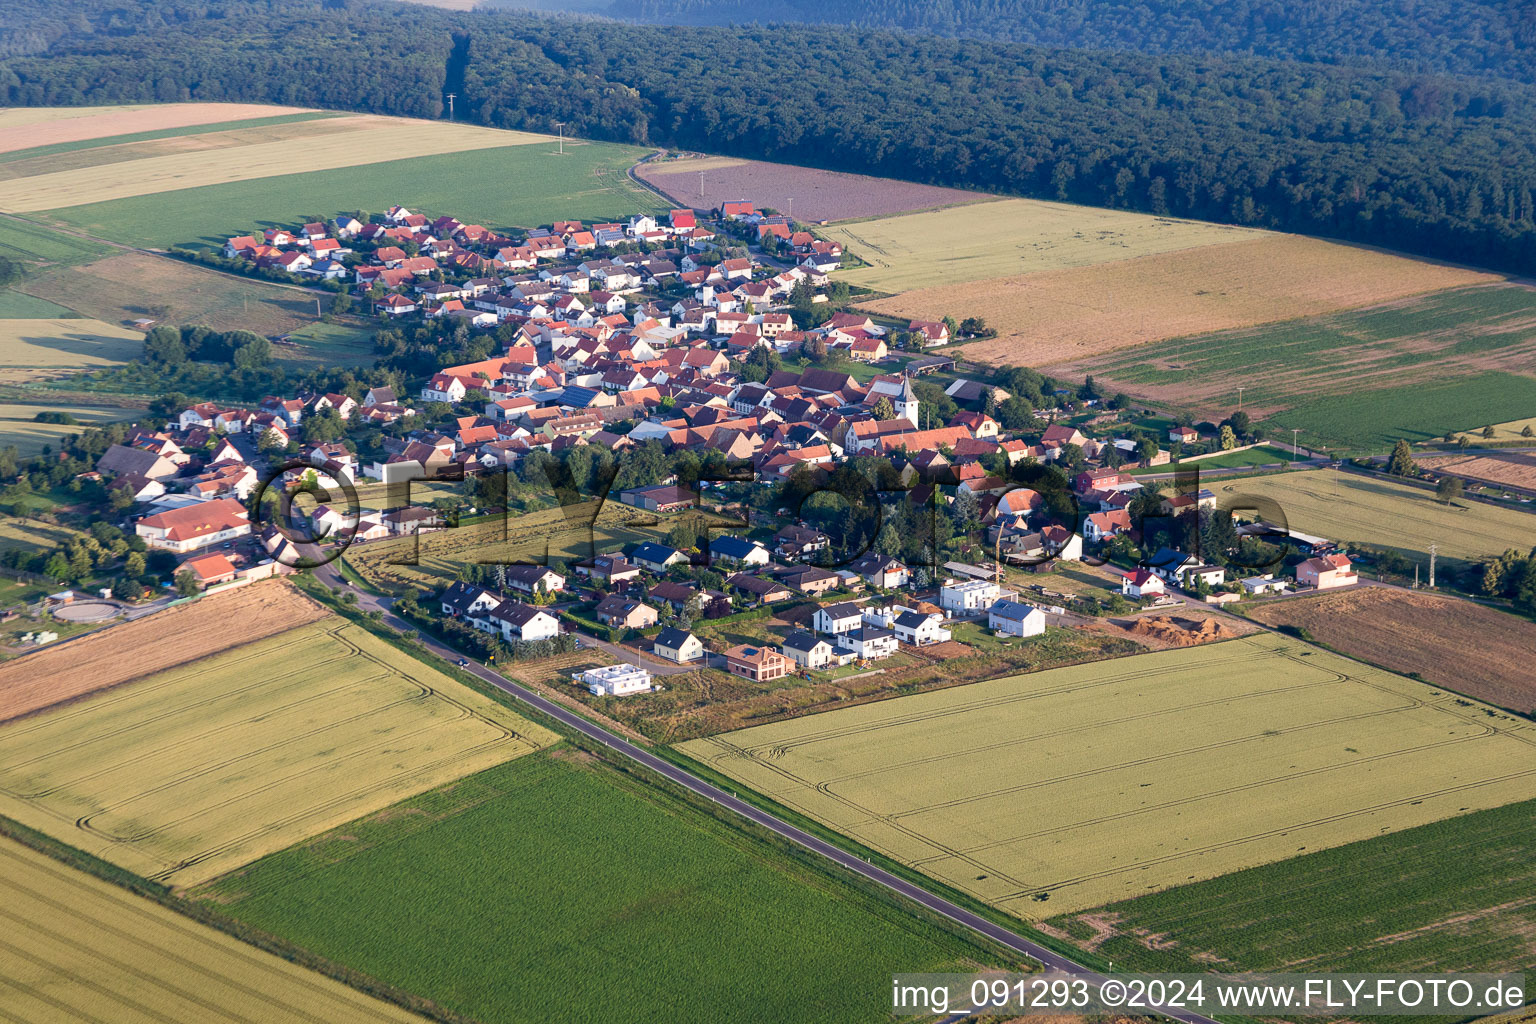 Luftbild von Dorf - Ansicht am Rande von landwirtschaftlichen Feldern und Nutzflächen in Orbis im Bundesland Rheinland-Pfalz, Deutschland